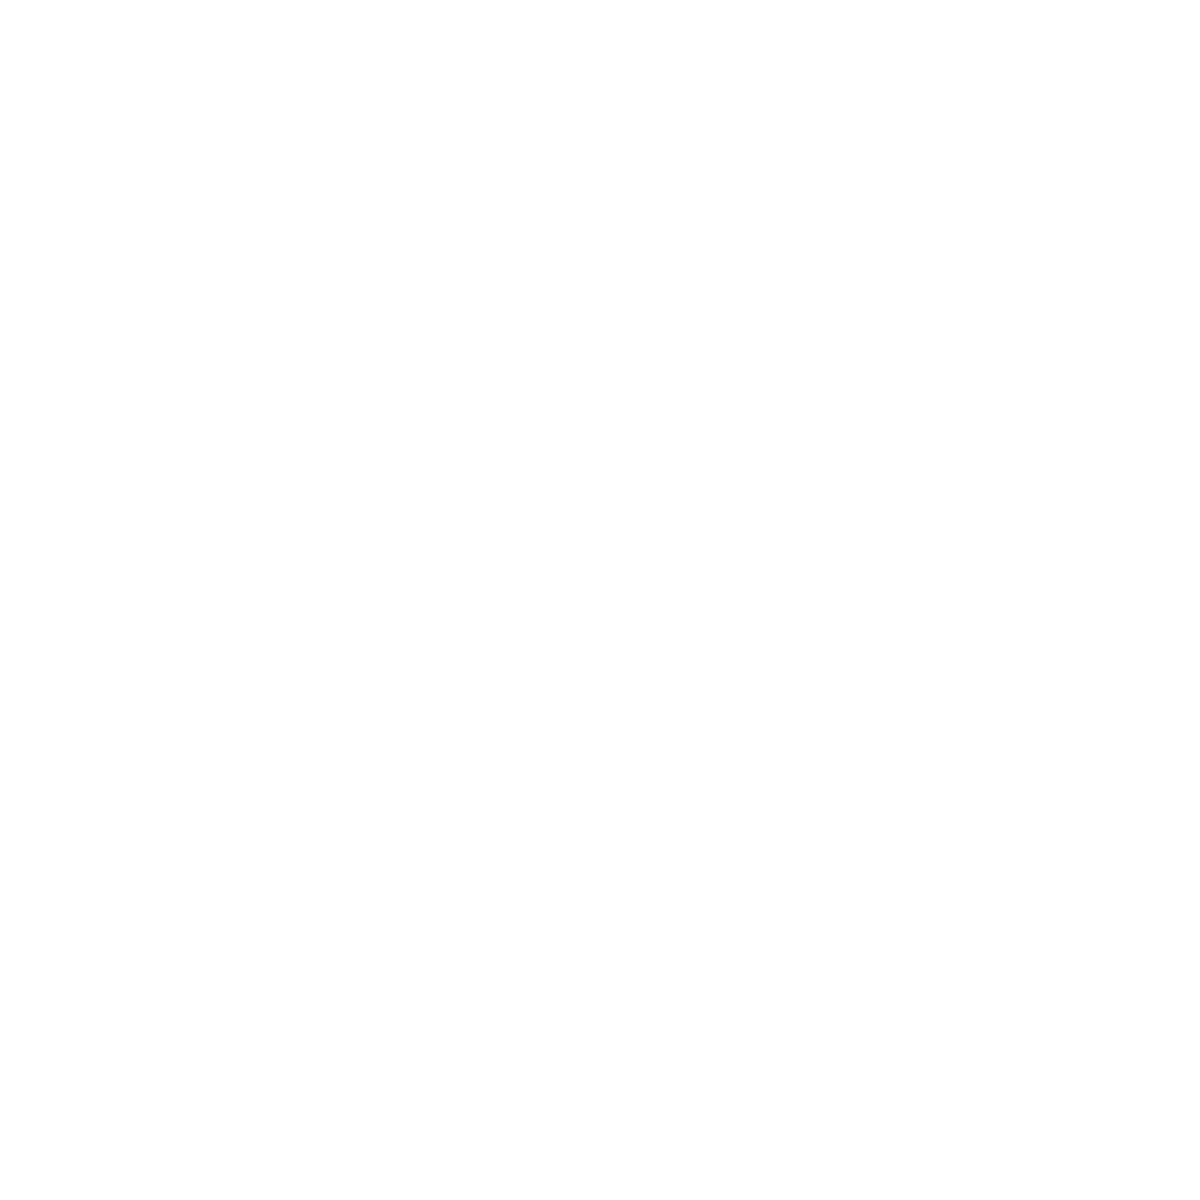 White volkswagen icon - Free white car logo icons